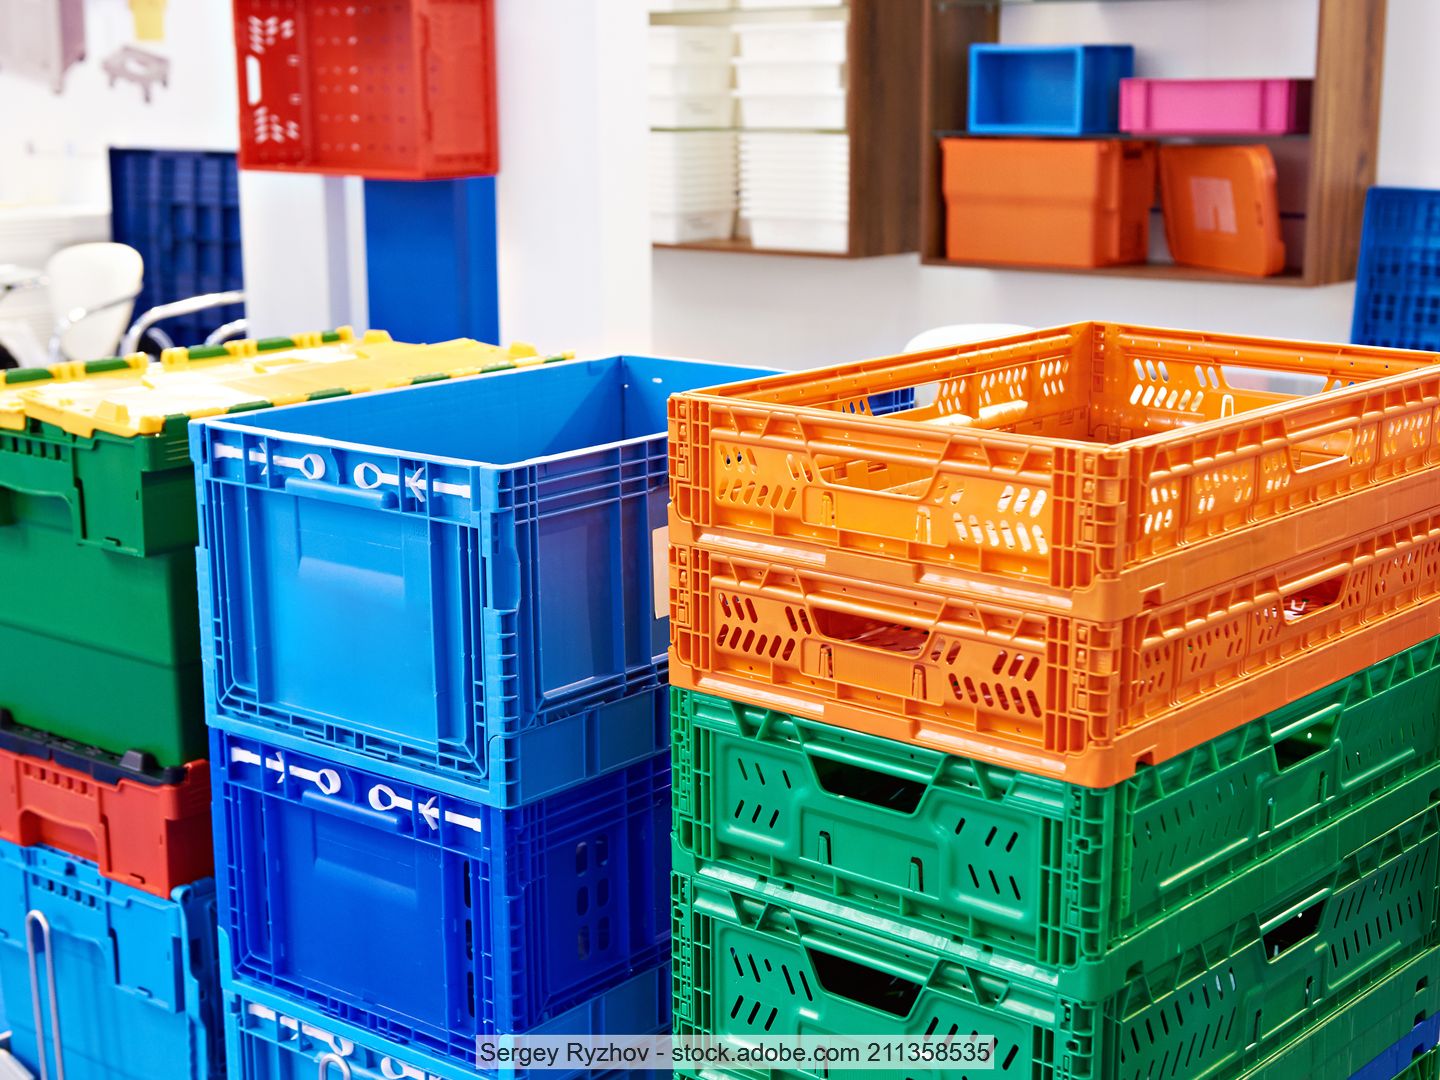 Gestapelte Transportkisten aus Kunststoff in verschiedenen Formen und Farben in einem Lagerraum.